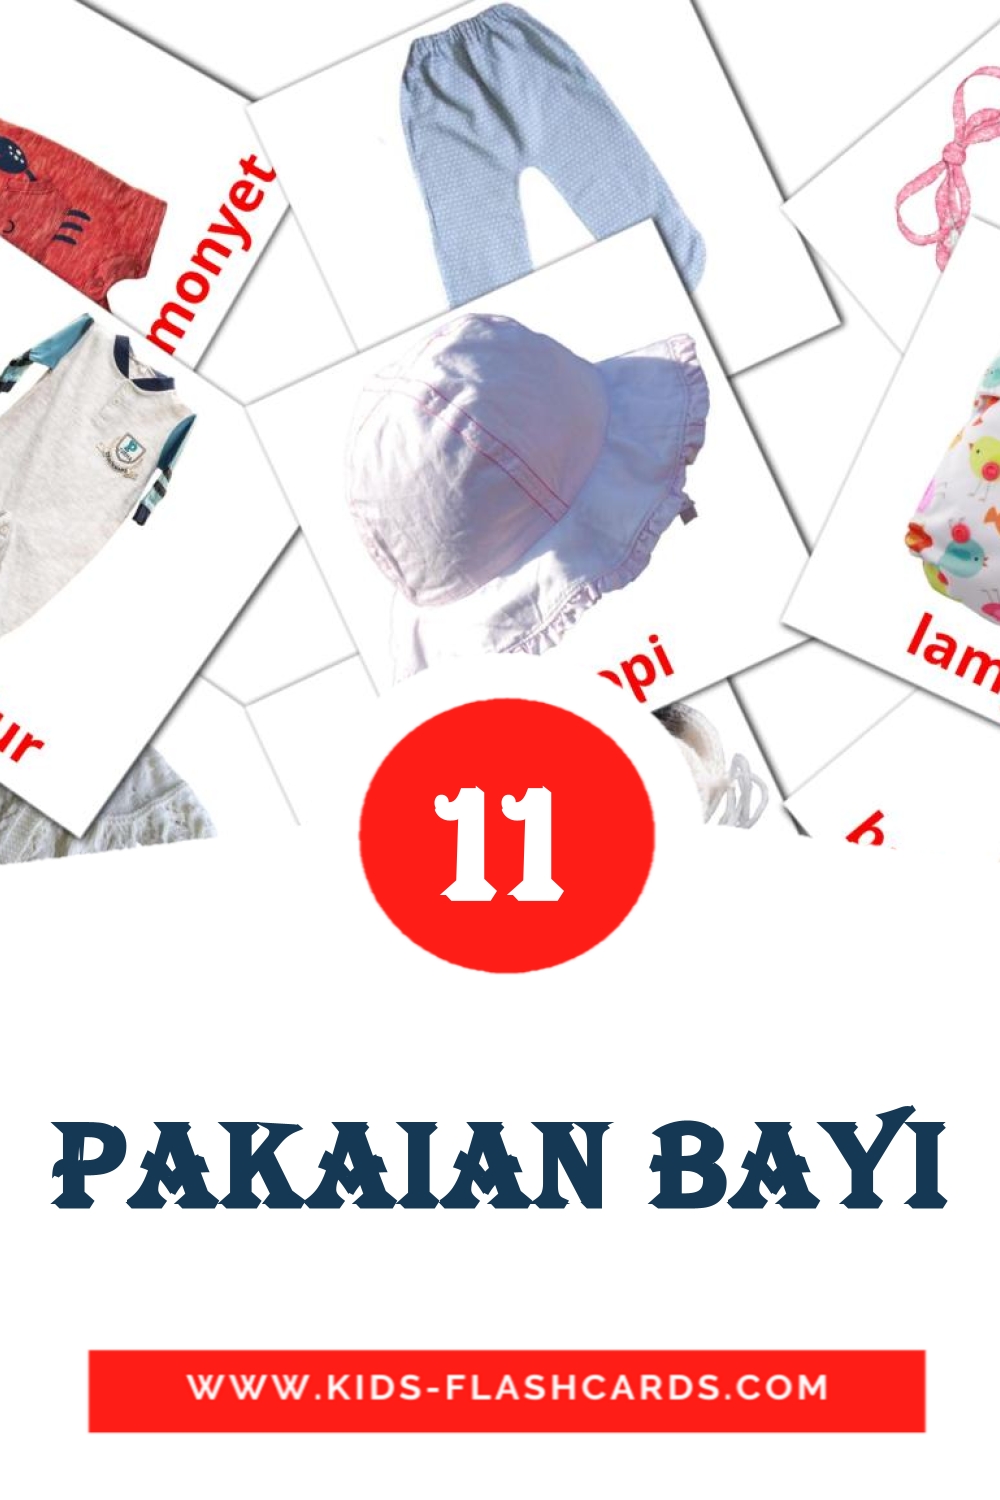 11 Pakaian Bayi fotokaarten voor kleuters in het malay